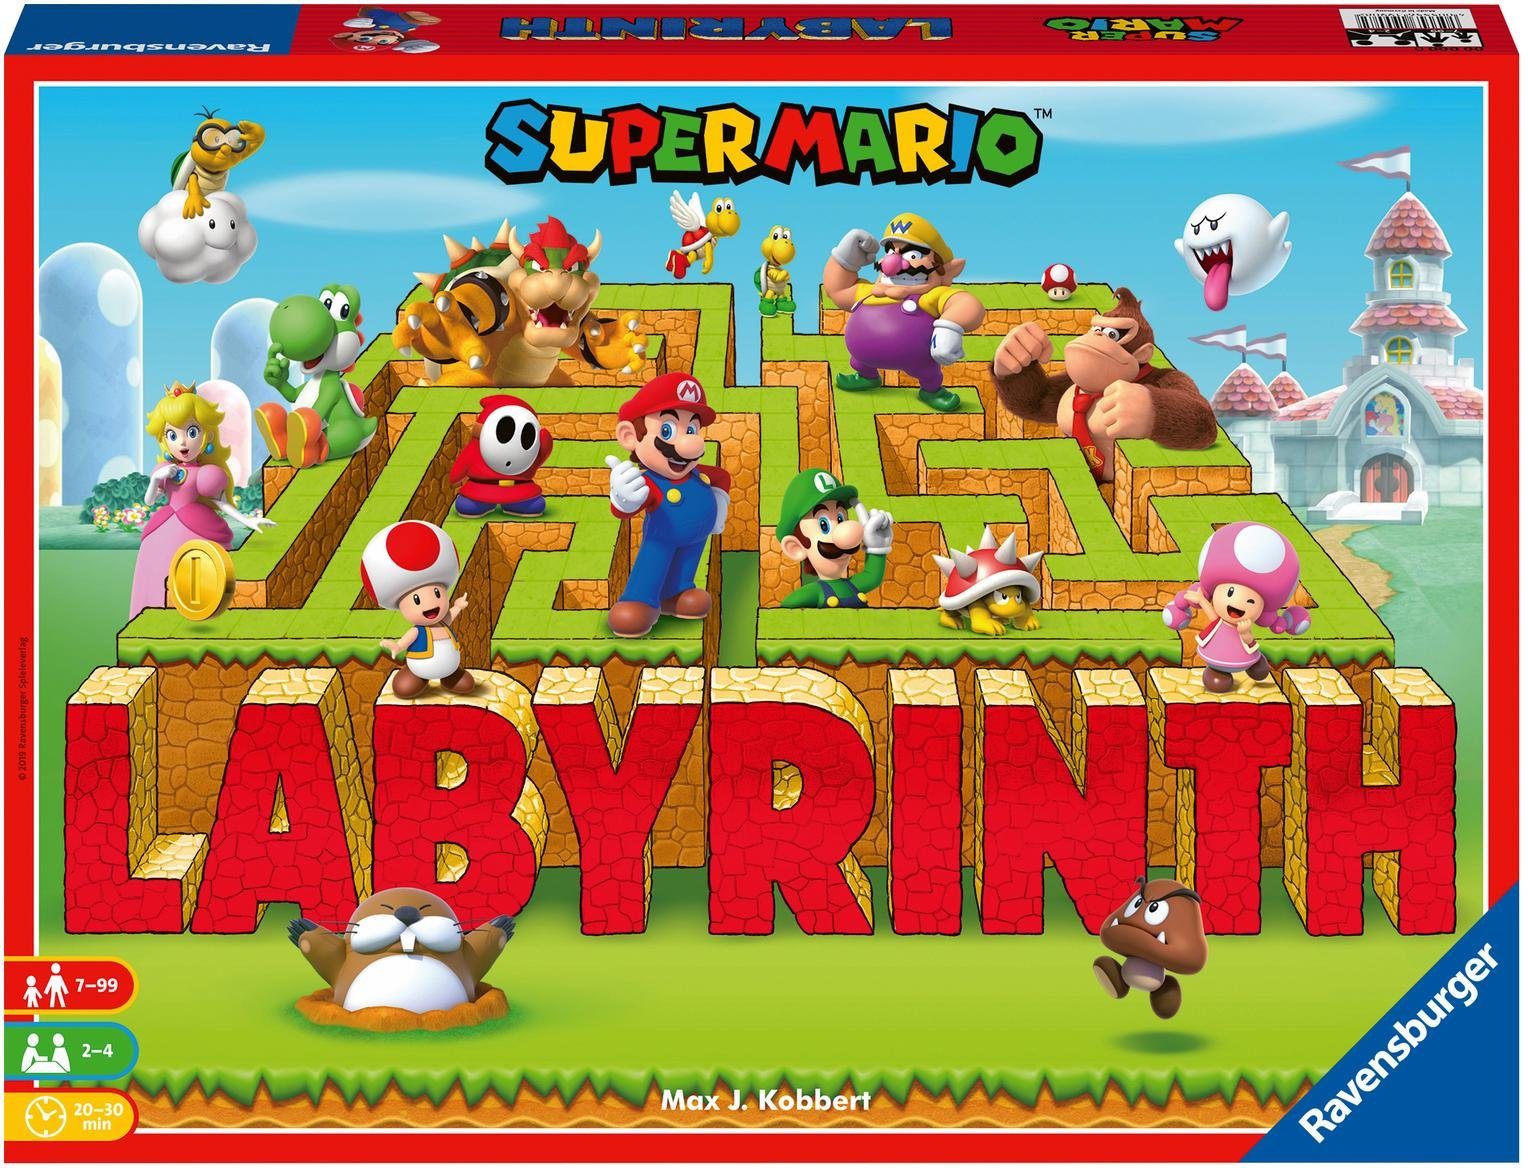 Made Supermario™ Spiel, Wald - Ravensburger FSC® in Europe, - schützt weltweit Labyrinth,